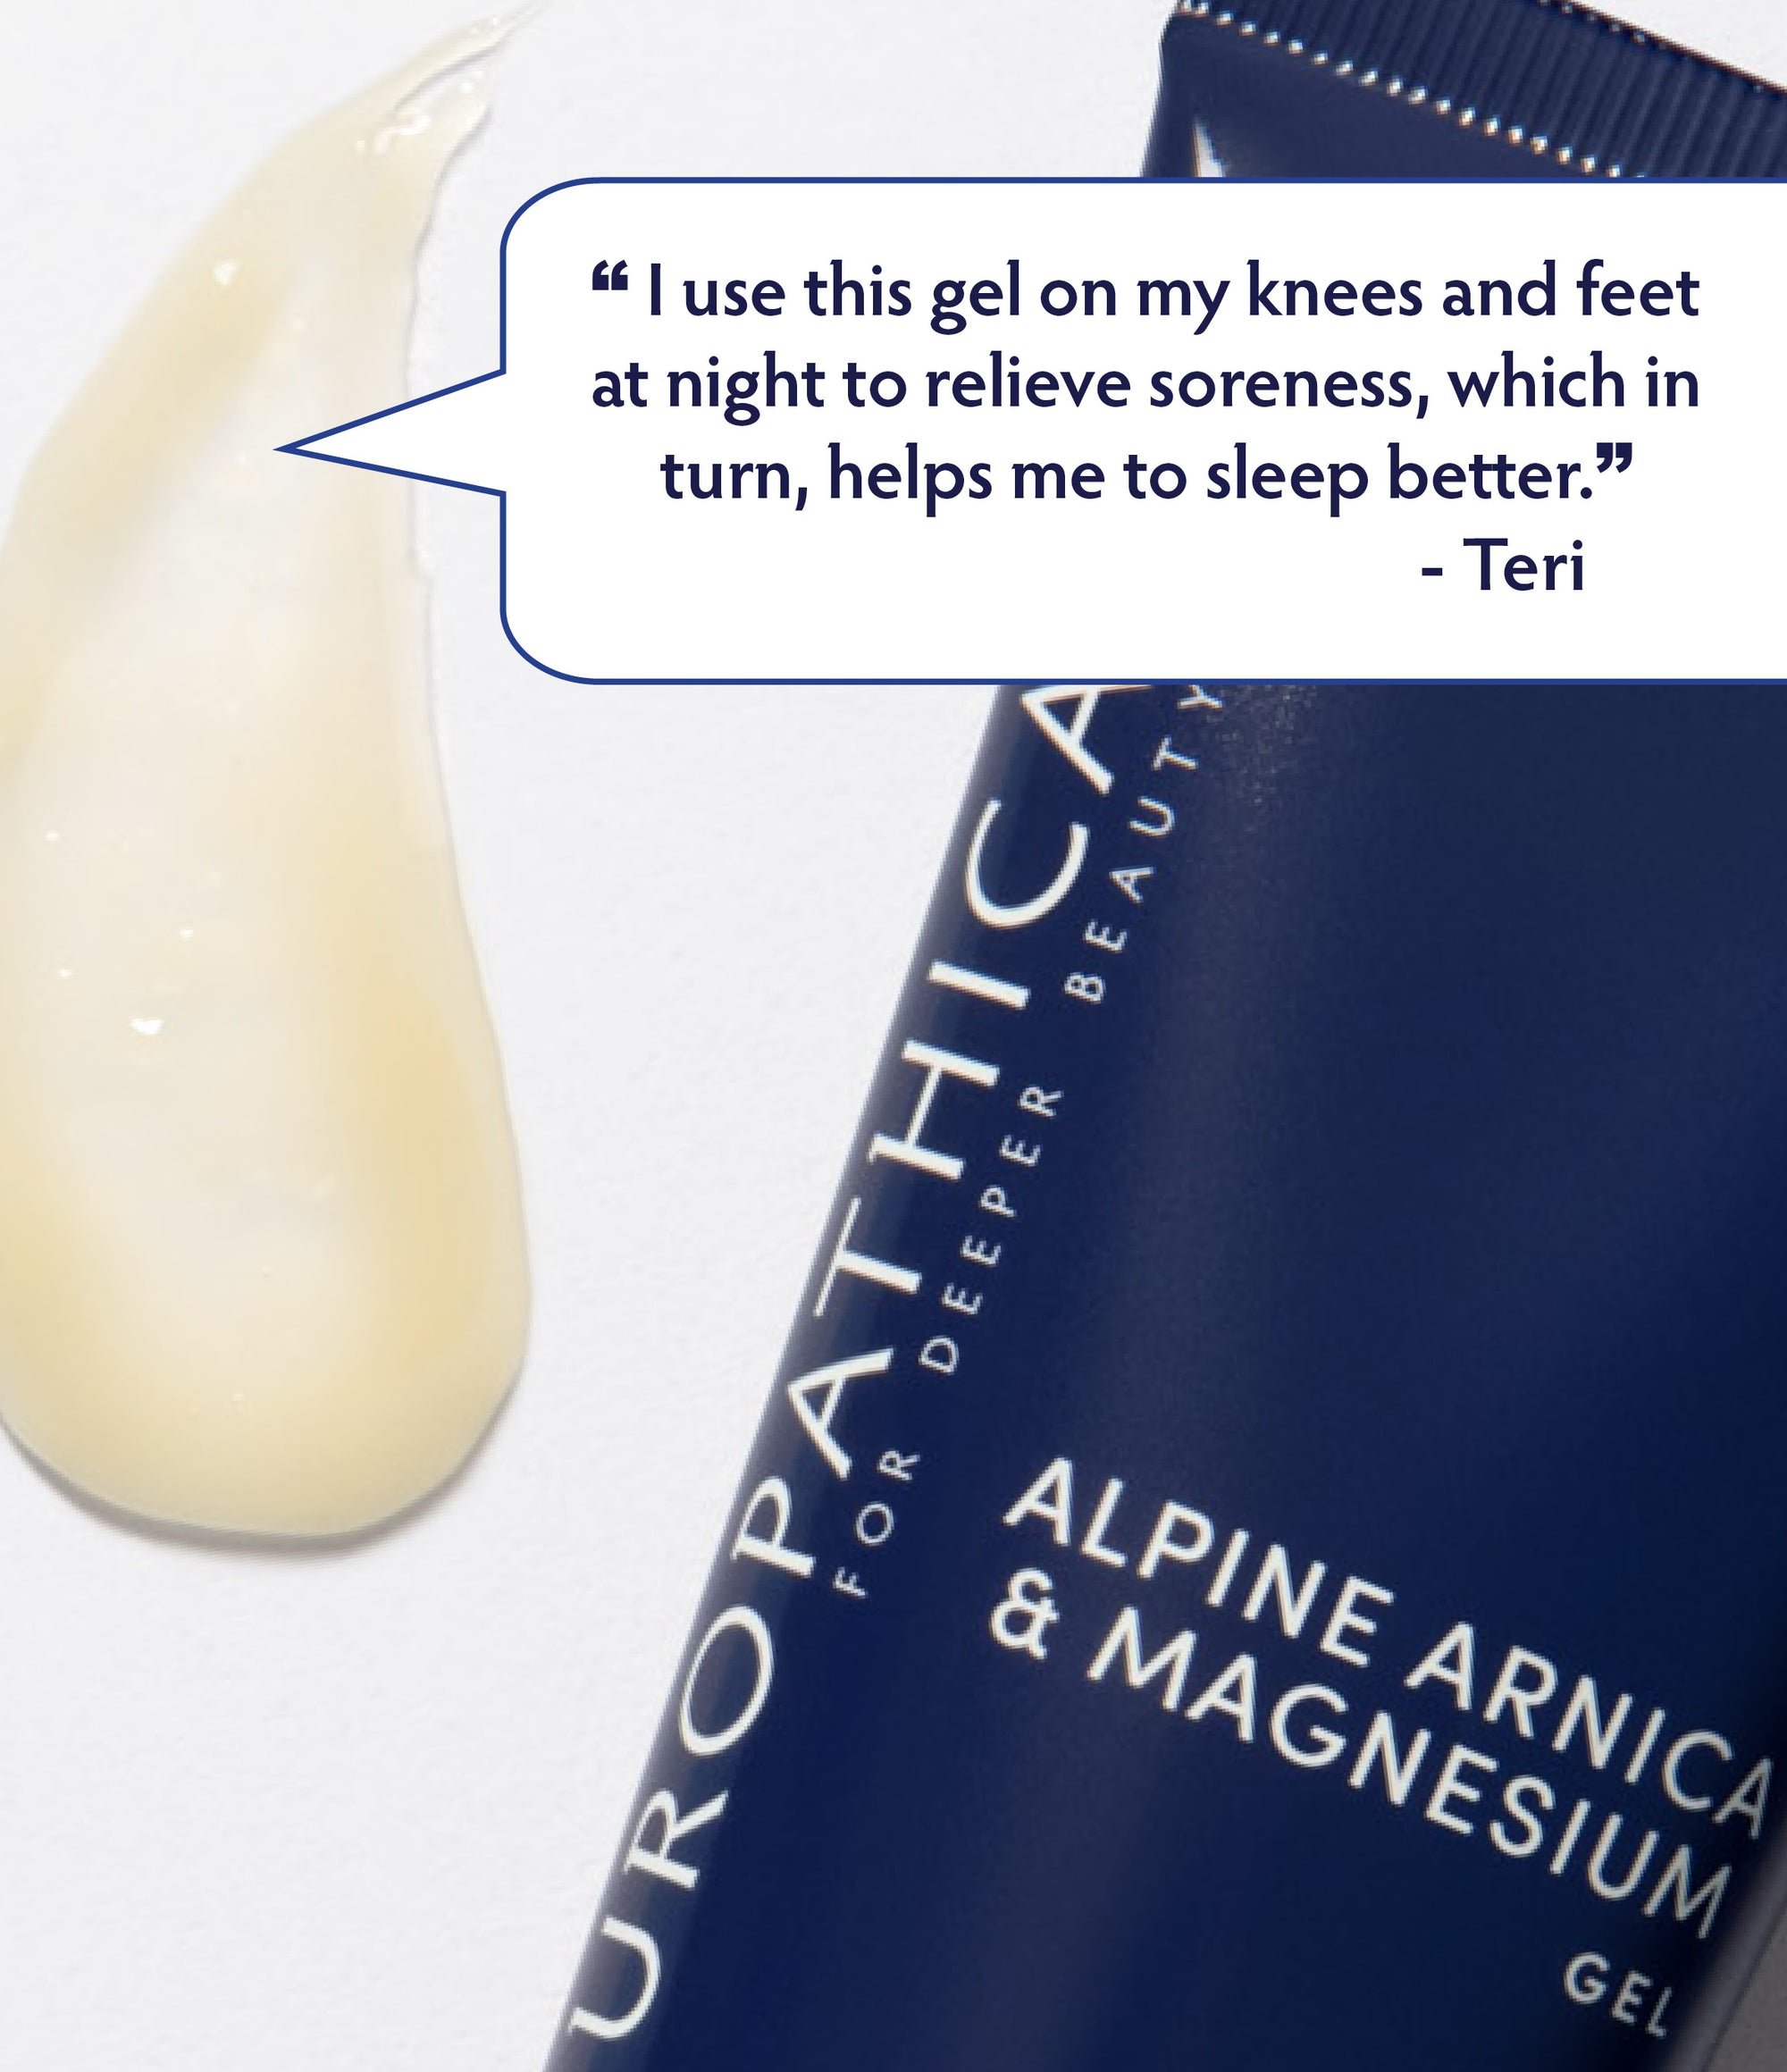 Alpine Arnica & Magnesium Gel Customer Endorsement Quote